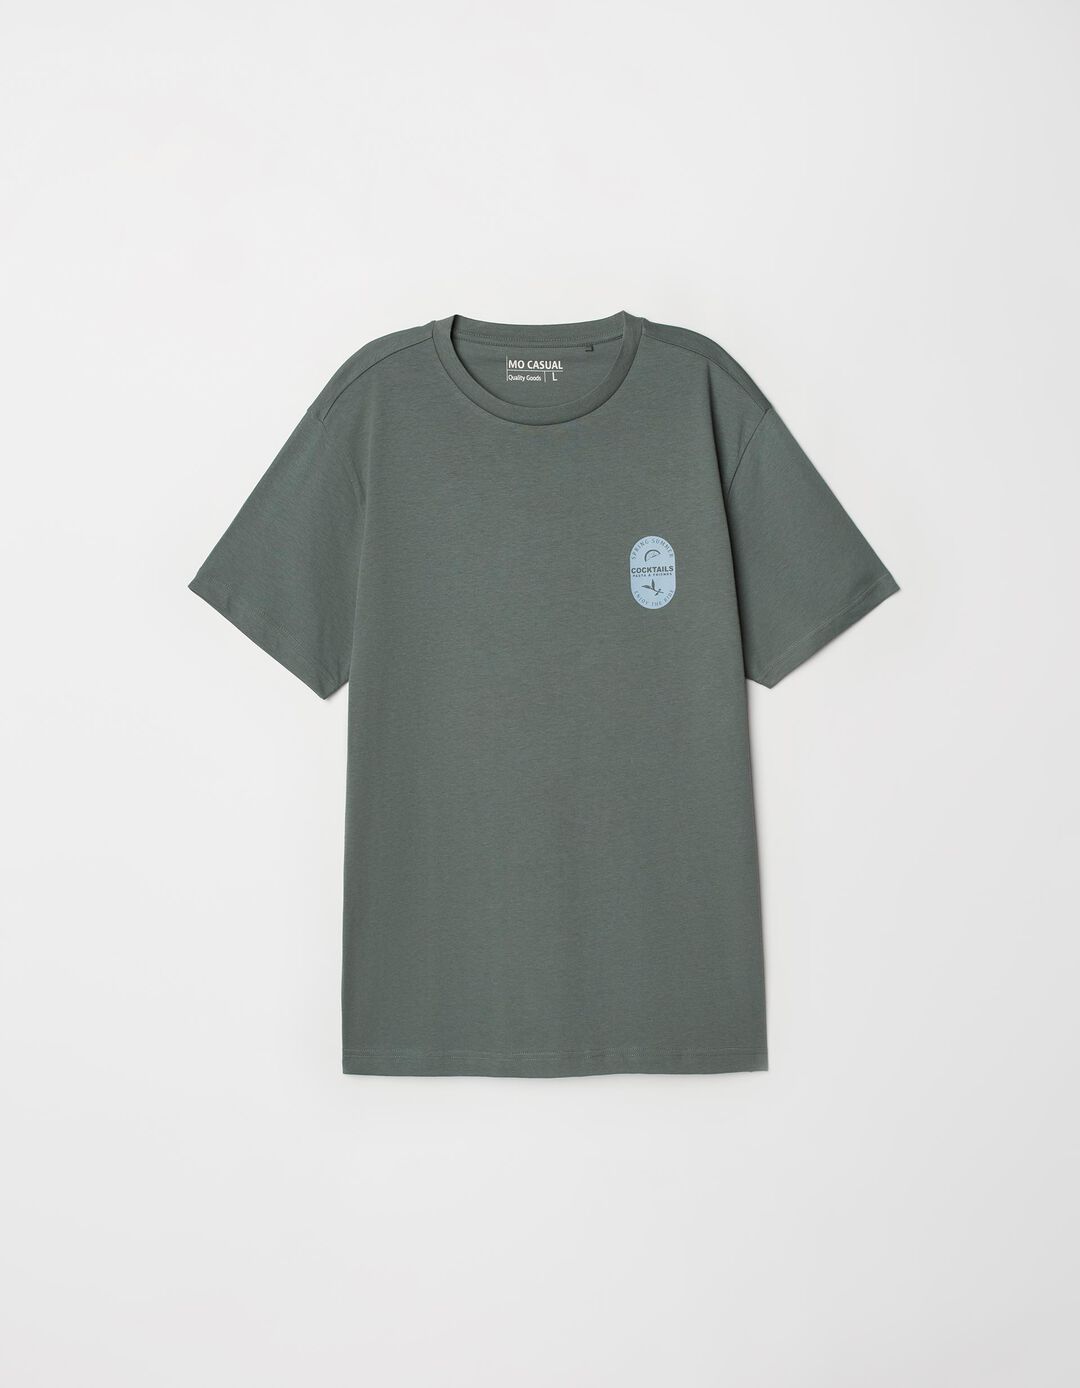 T-shirt Estampado, Homem, Verde Escuro